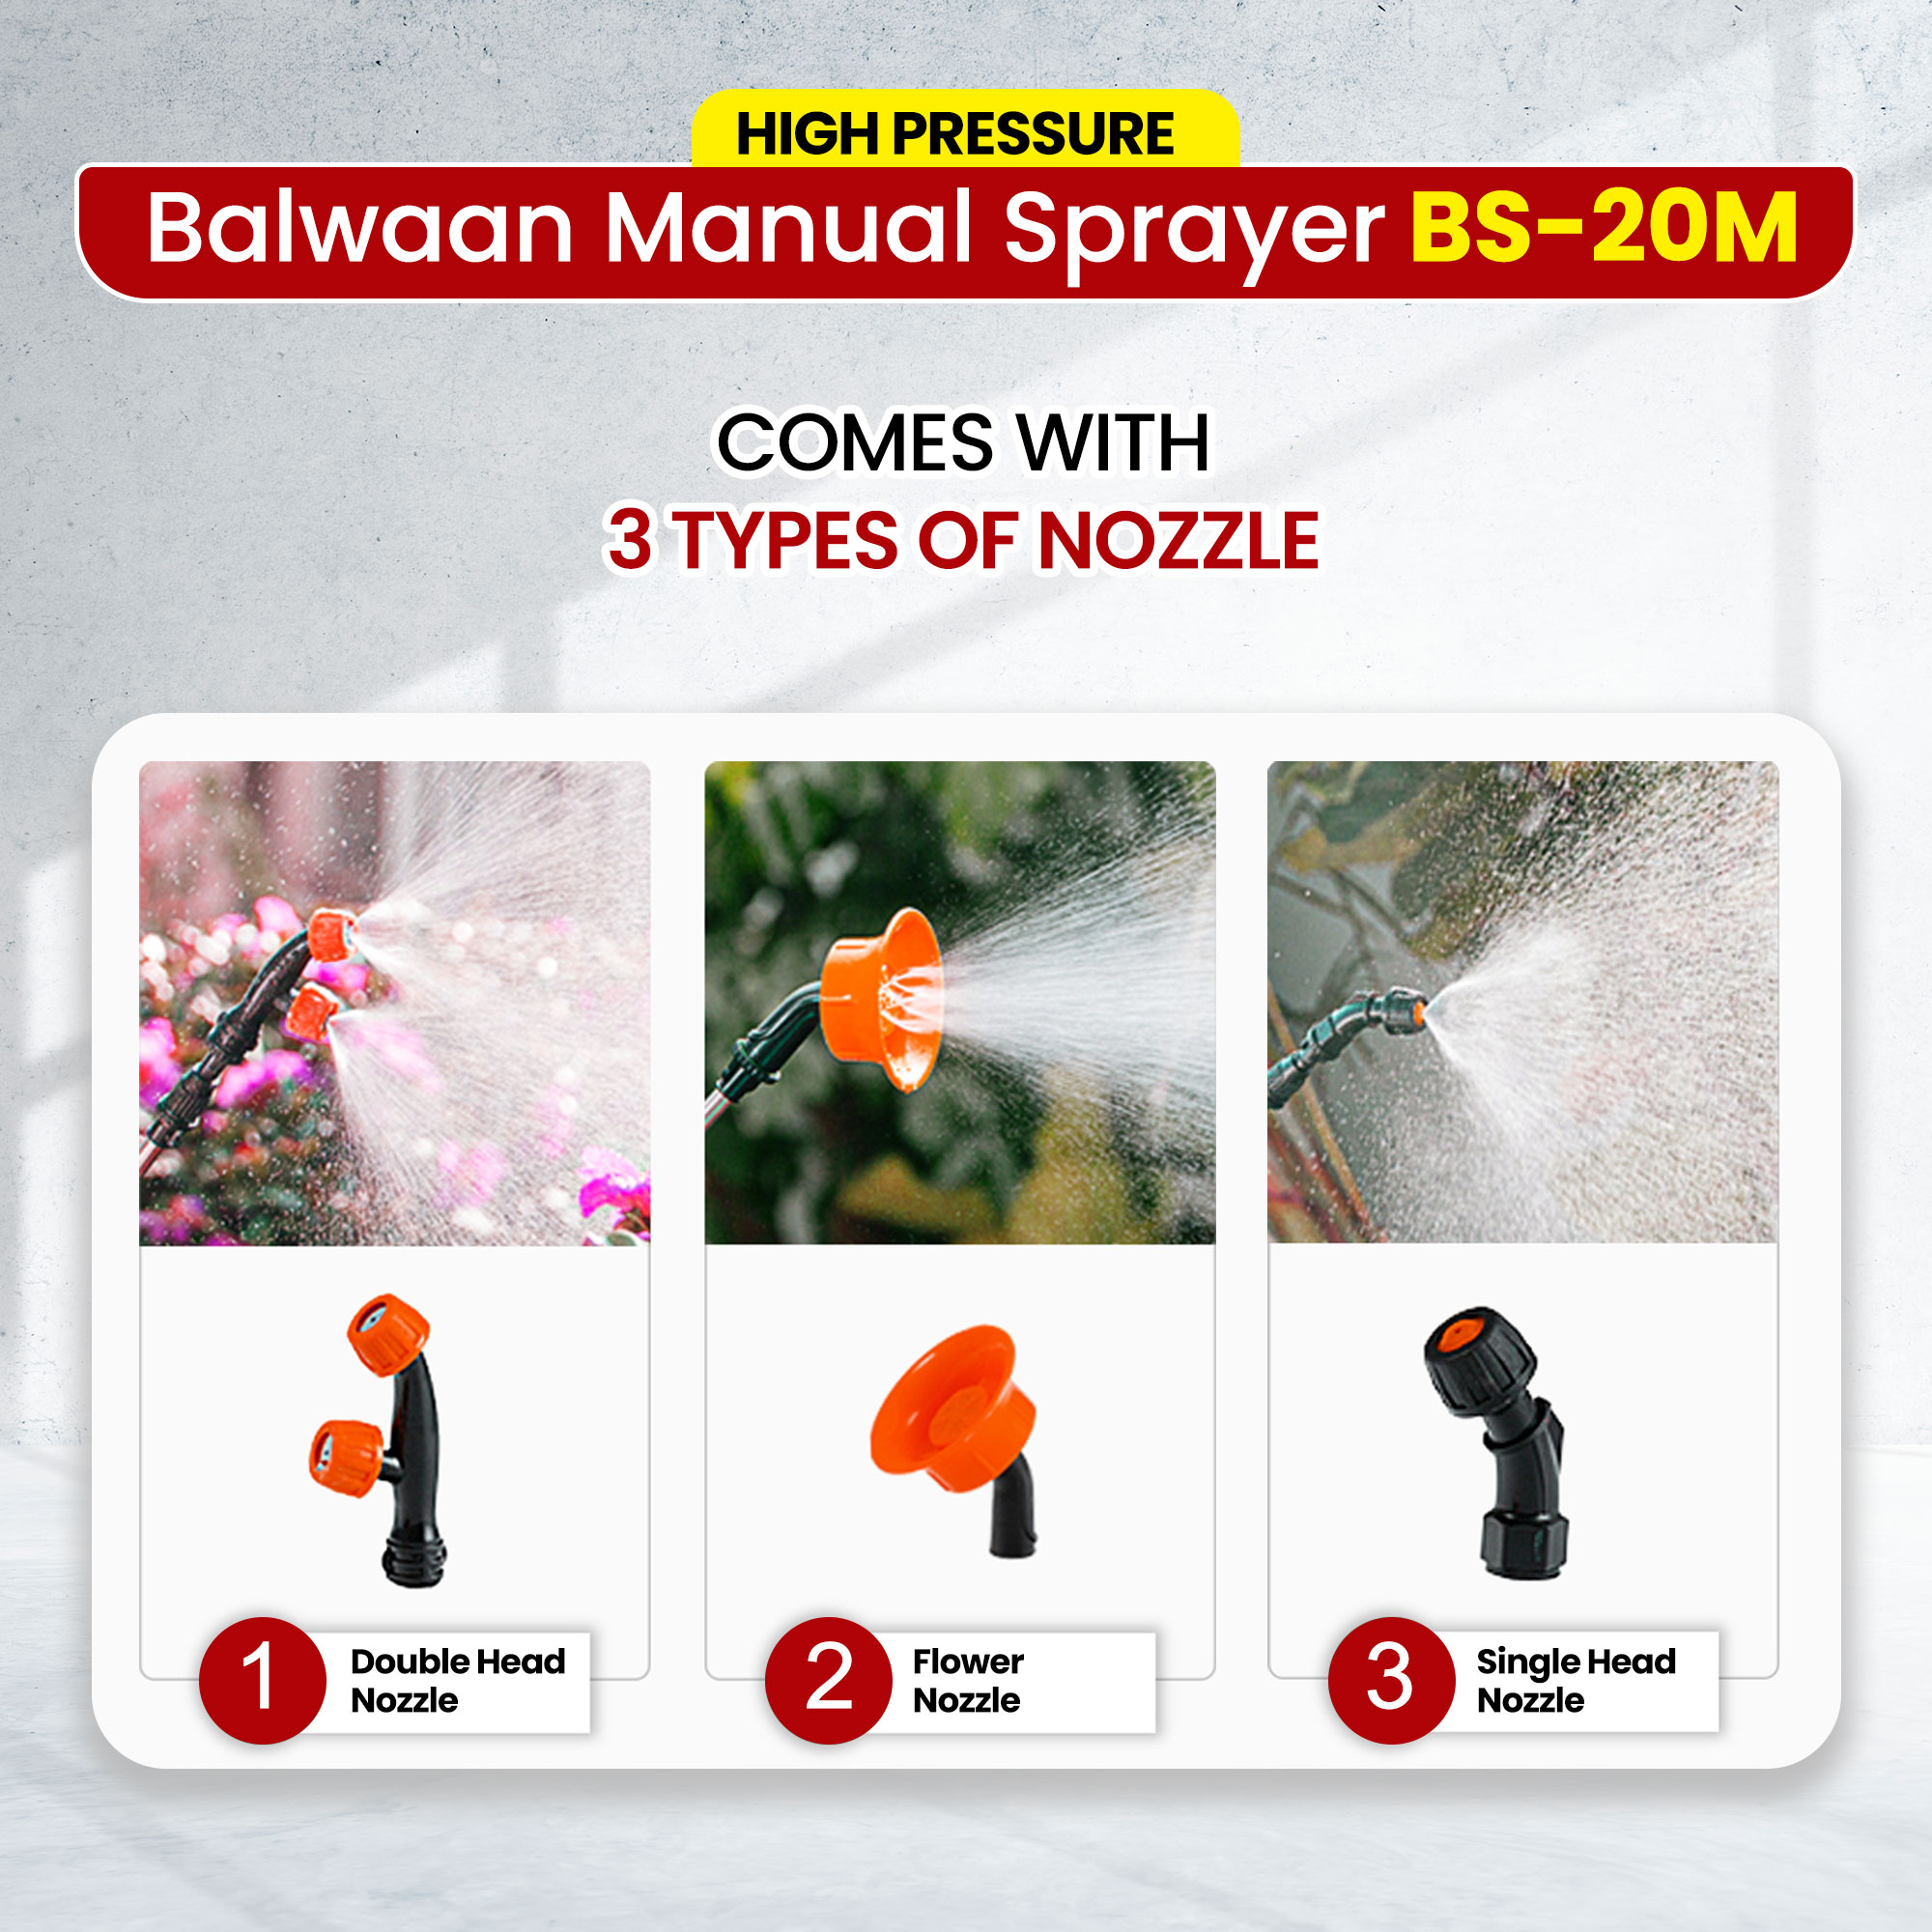 Balwaan BS-20M Manual Sprayer (20 Liters)